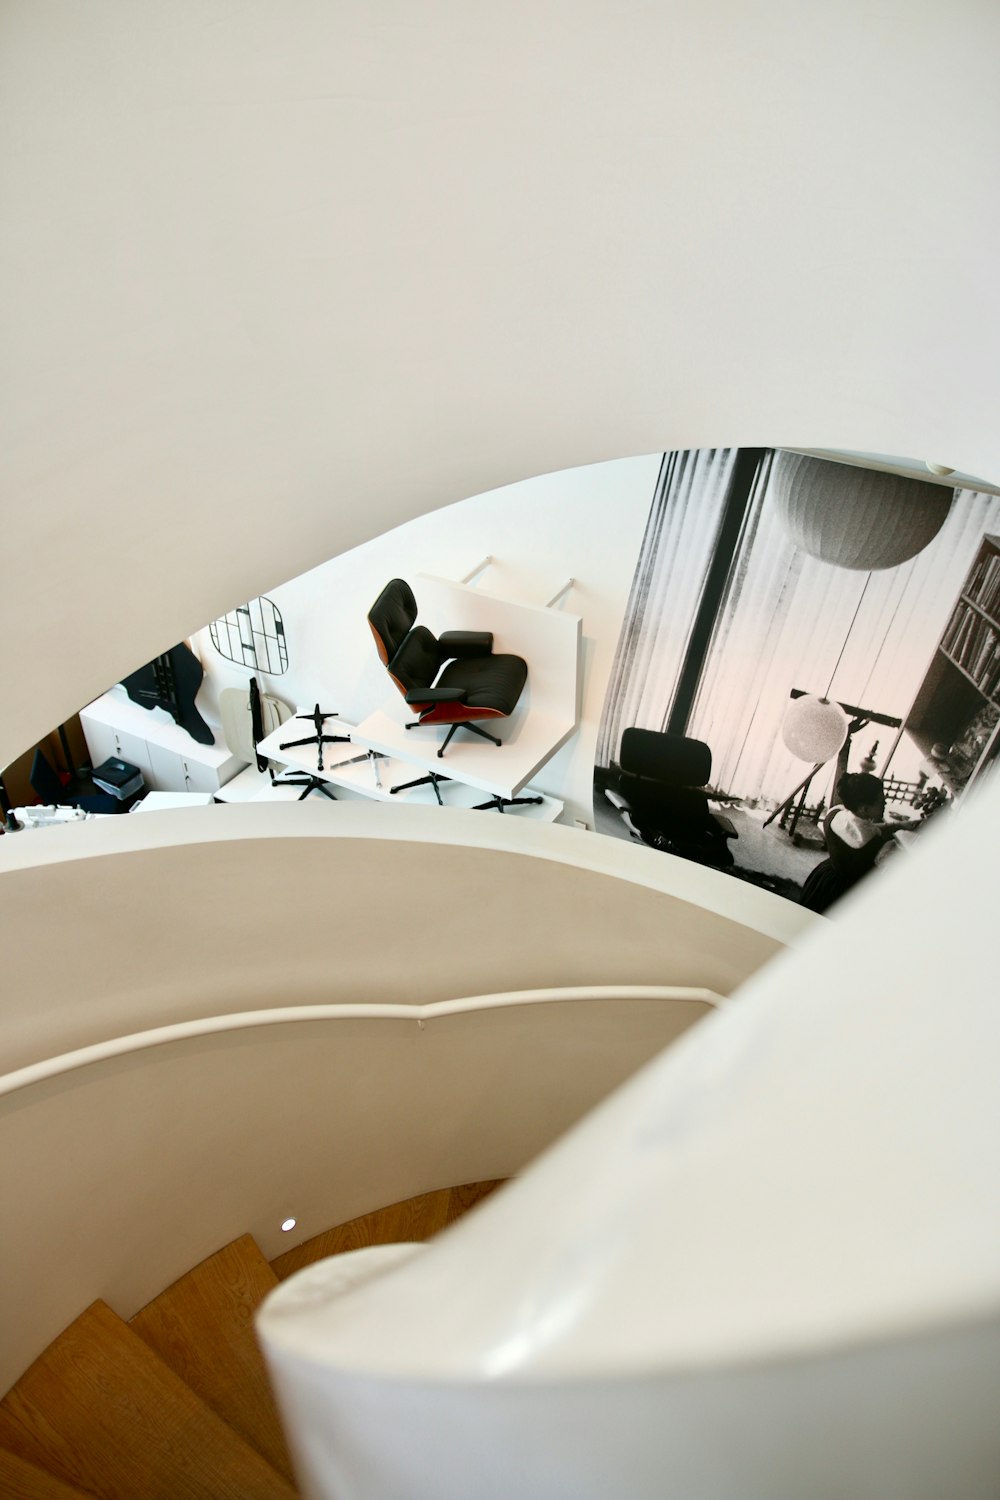 Vista de las escaleras de caracol dentro de la oficina